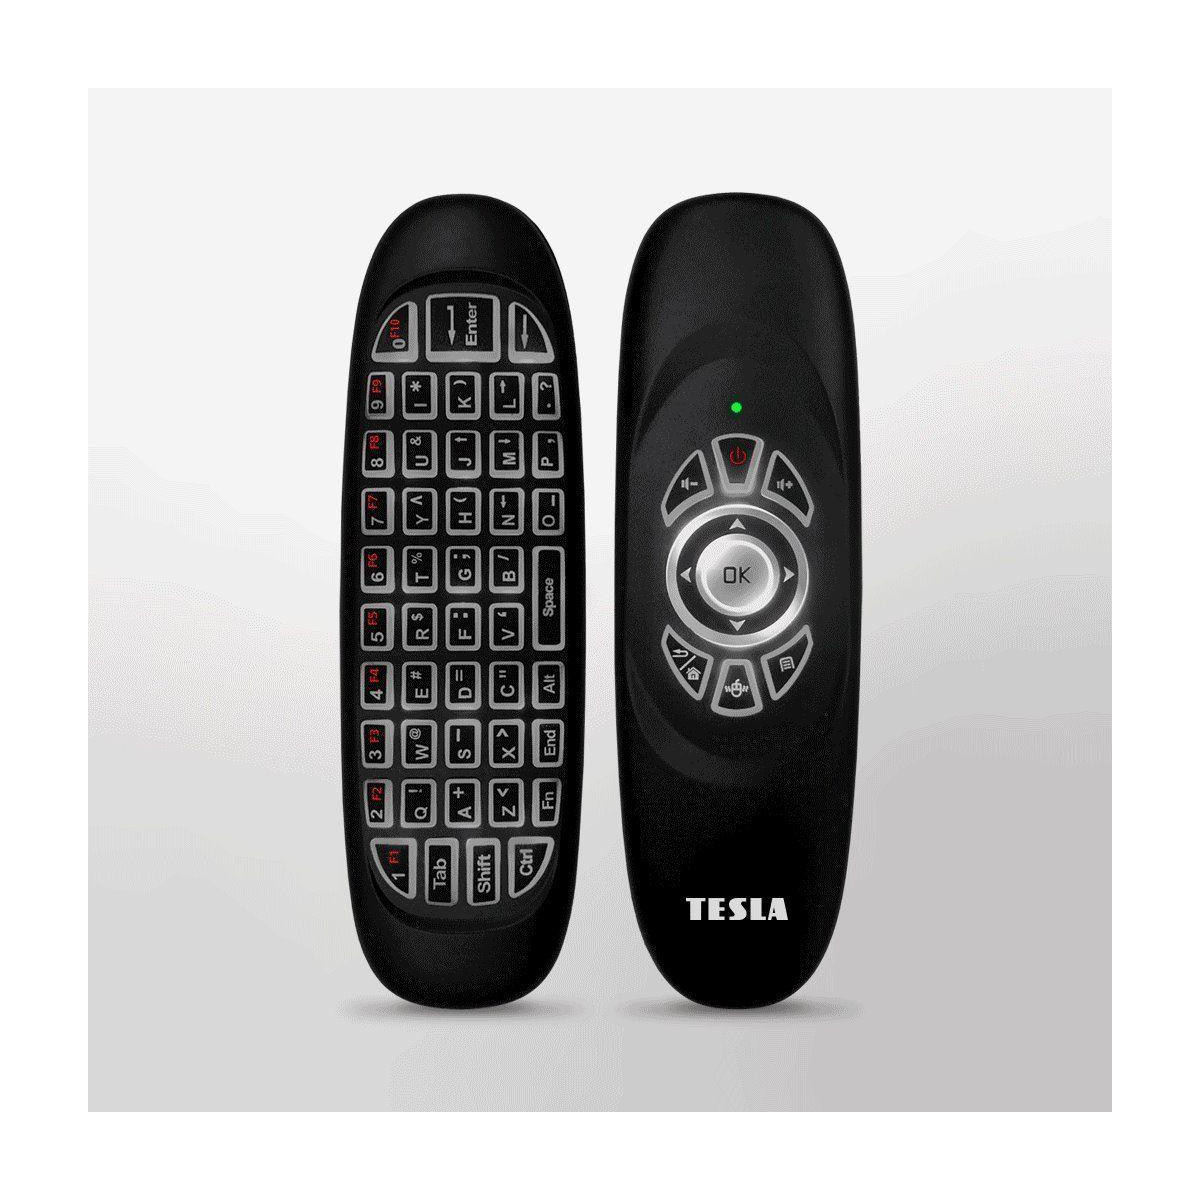 More about TESLA Device WK180 - 2v1 bezdrátová klávesnice s ovladačem kompatibilní